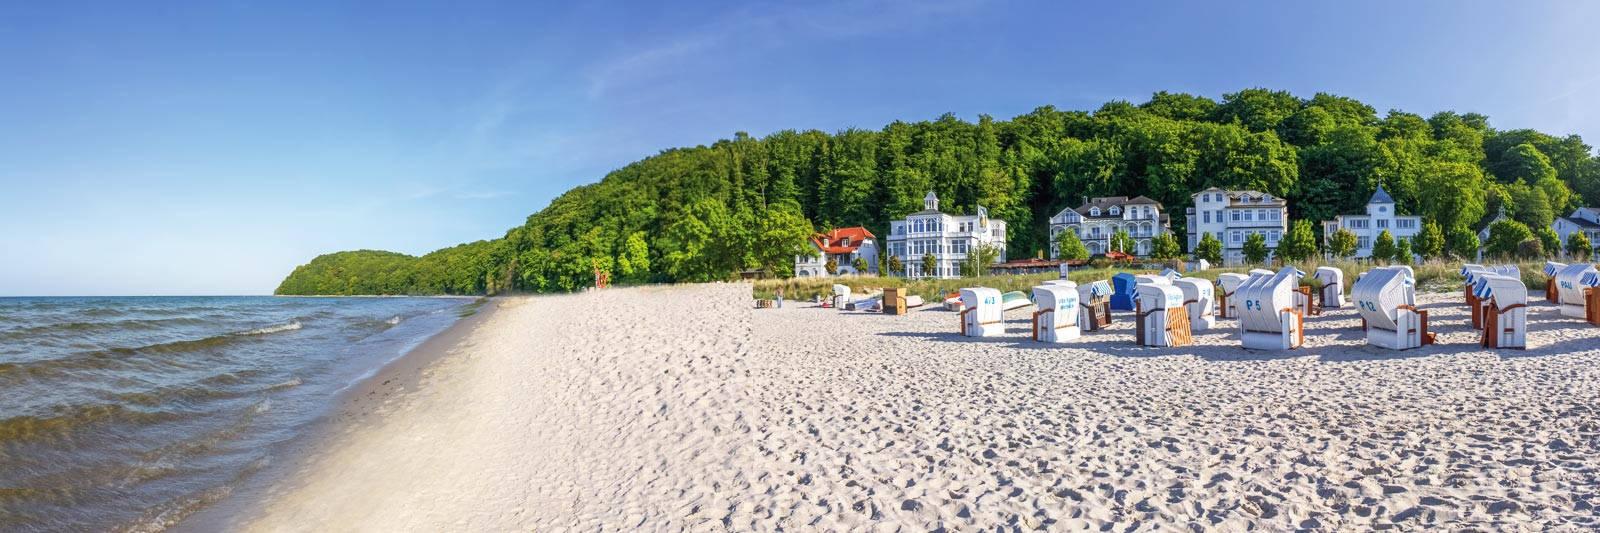 15 Ferienwohnungen und Ferienhäuser in Wooster Teerofen - tourist-online.de